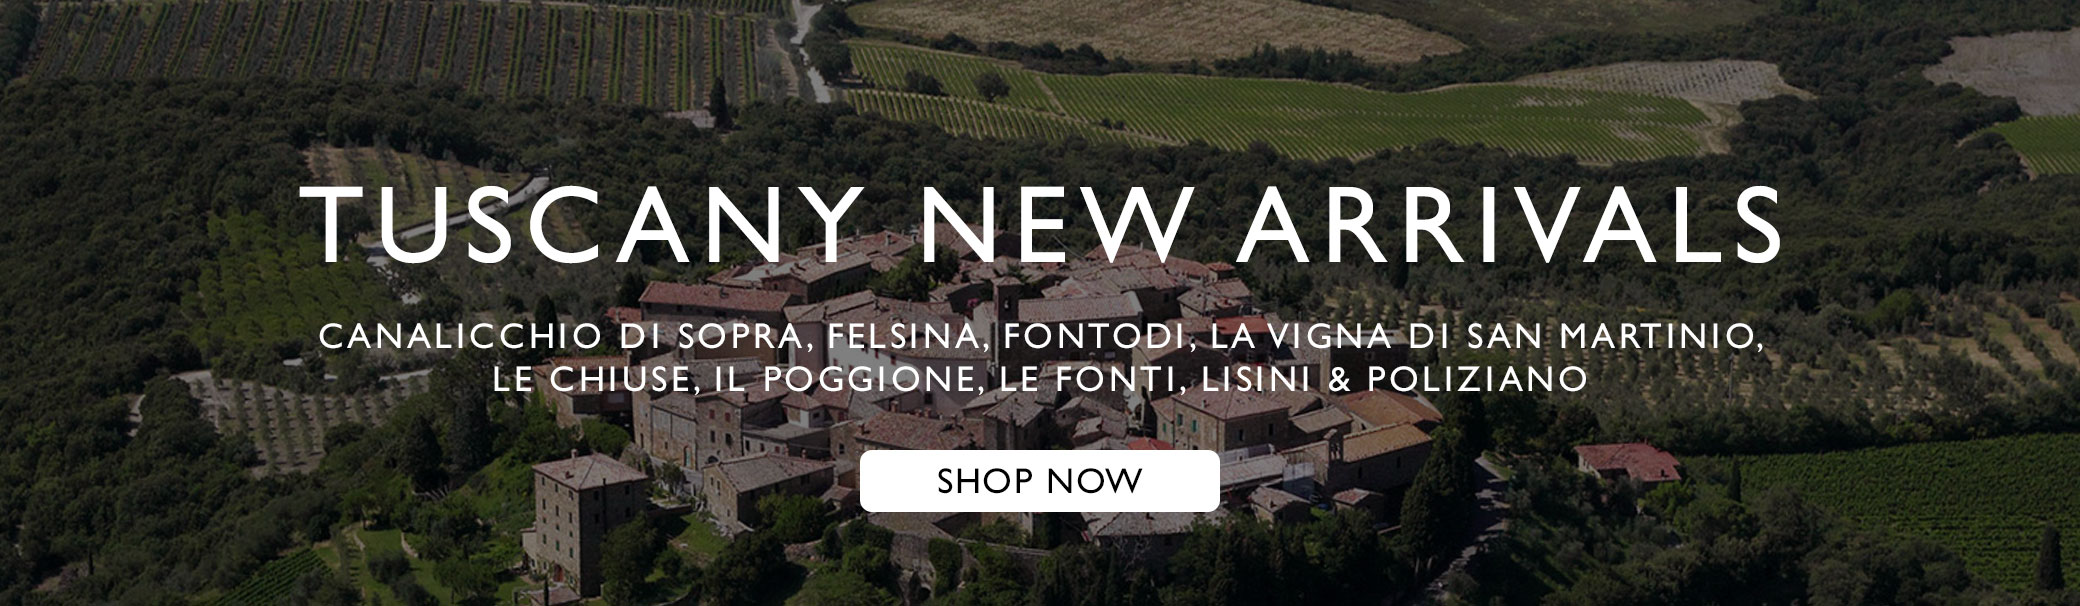 Tuscany - New Arrivals